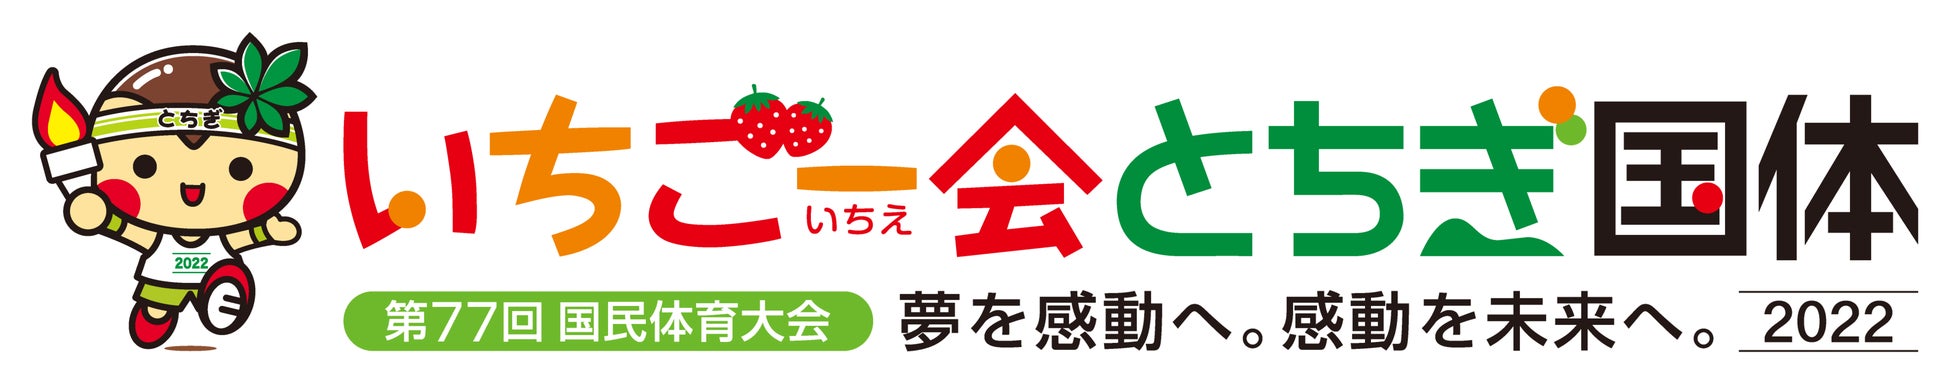 東京ユナイテッドバスケットボールクラブが『奥村商事株式会社』とのオフィシャルパートナー契約を締結